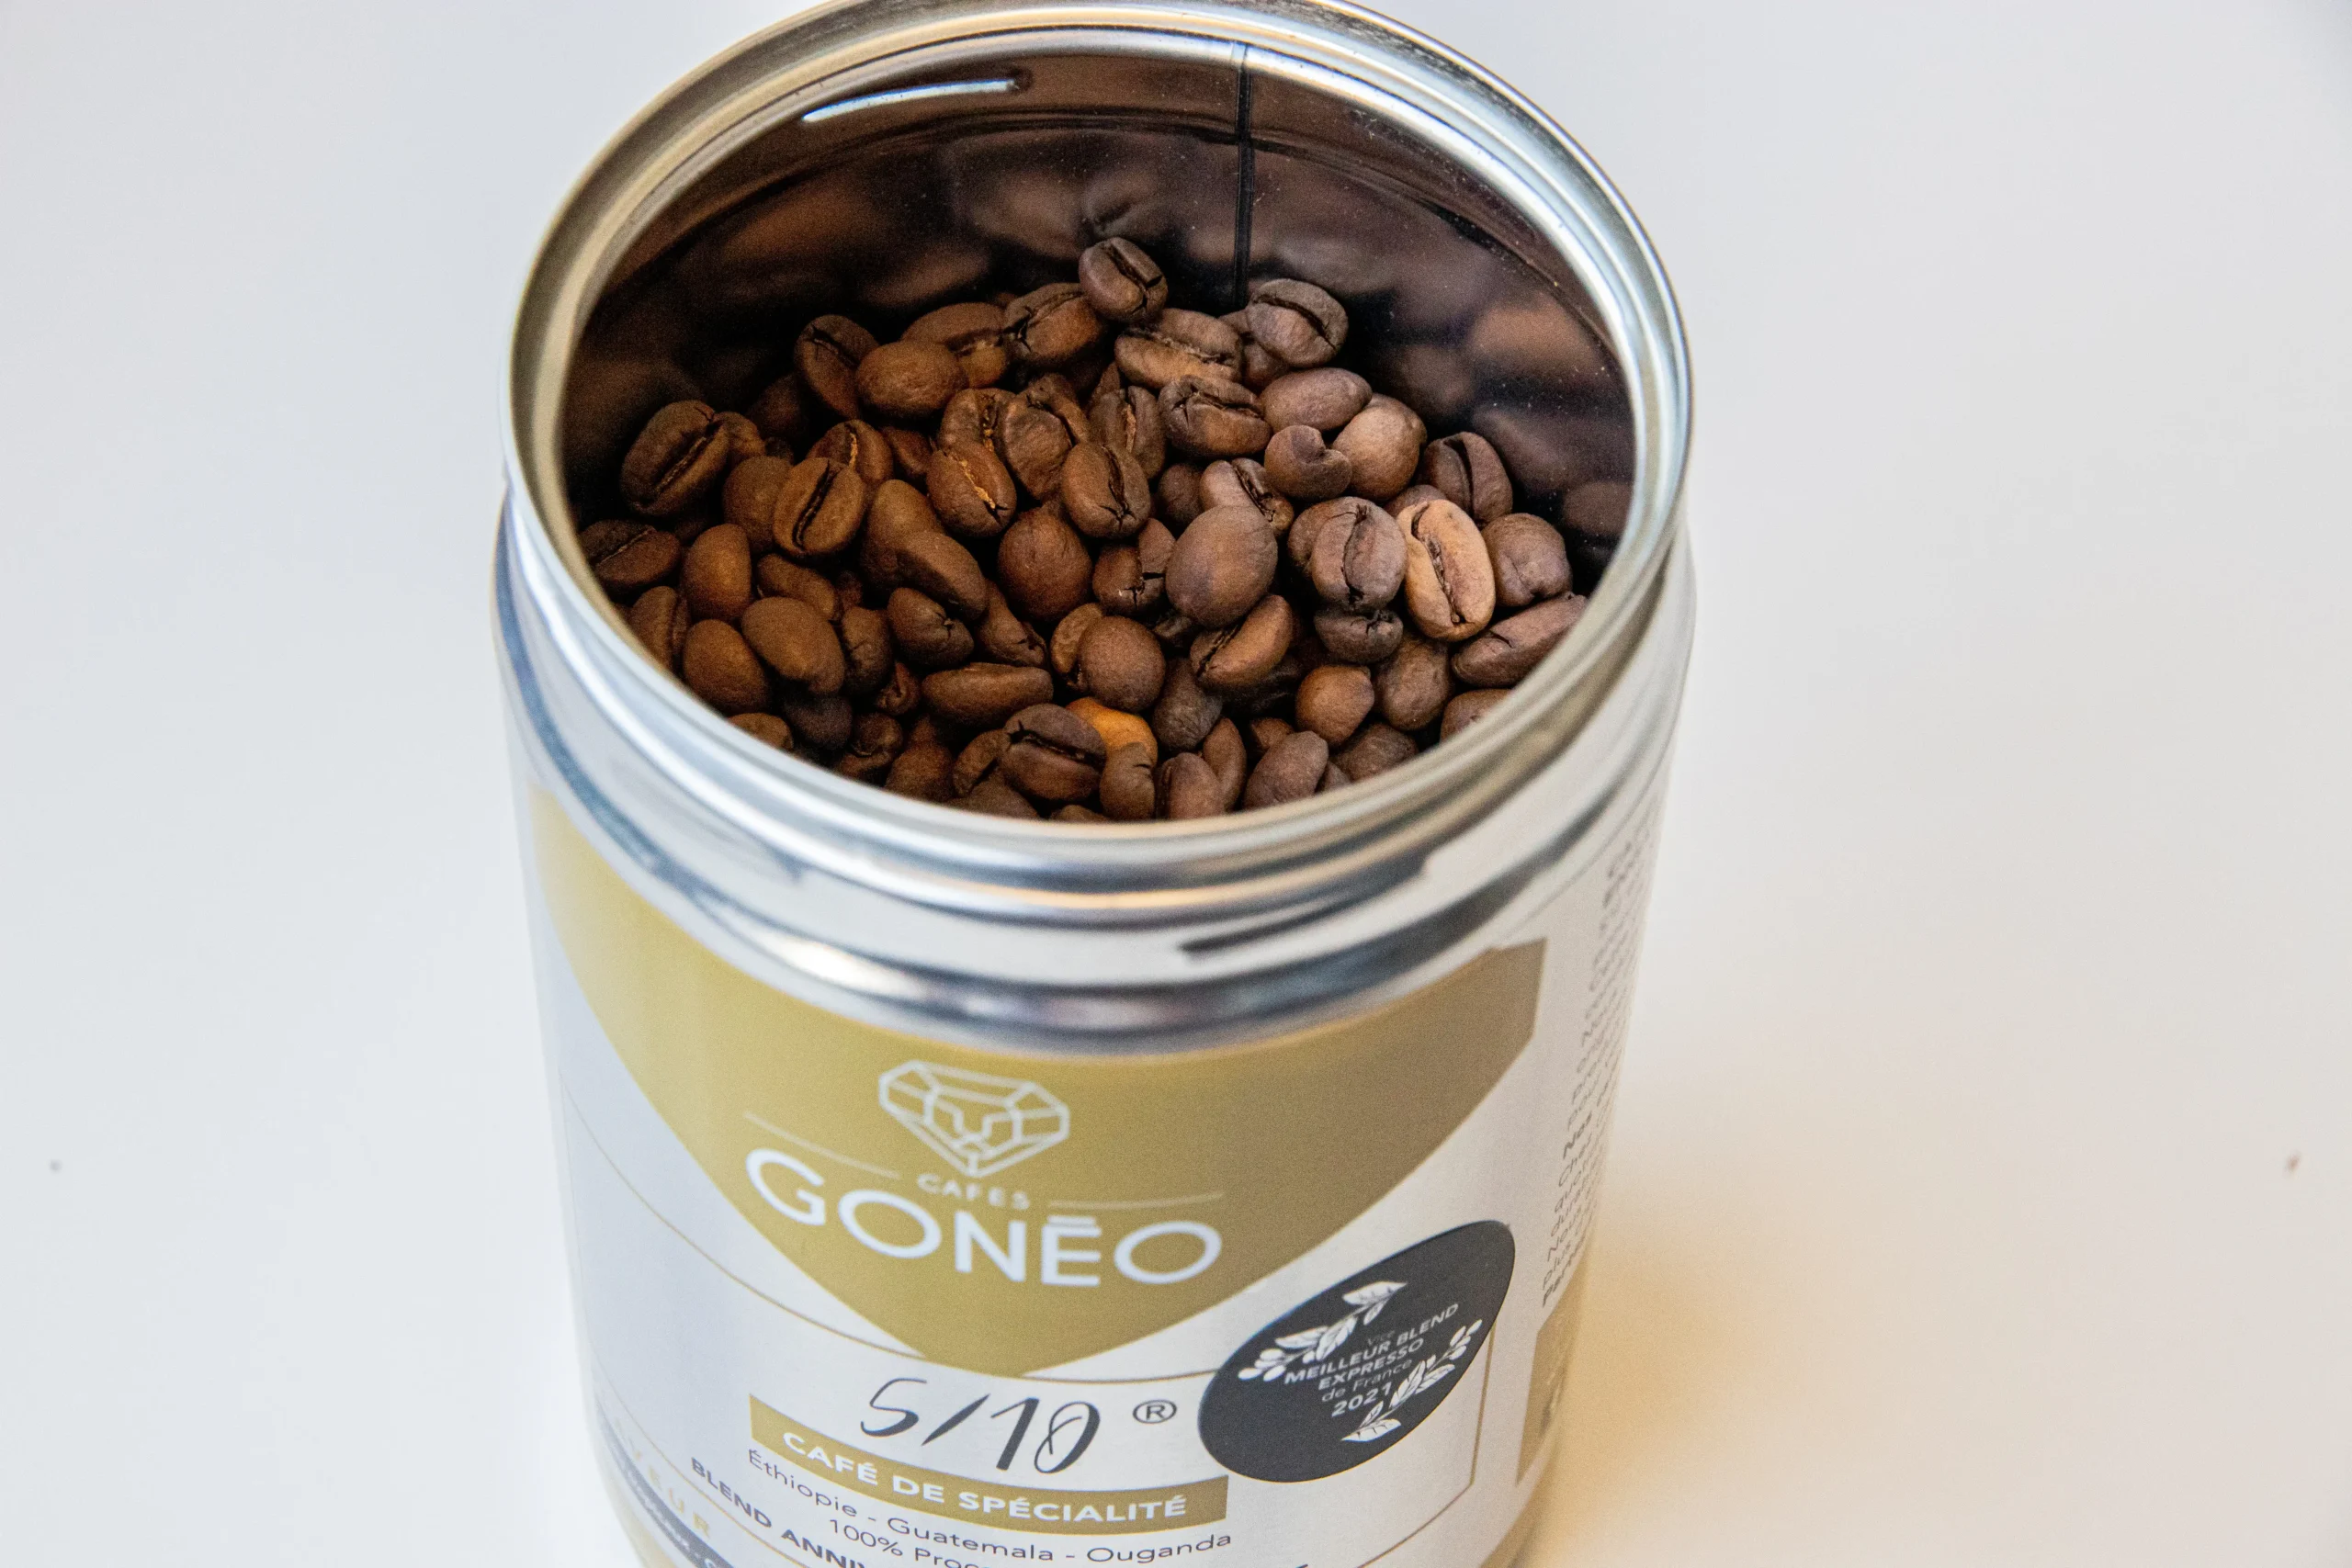 Boîte métallique ouverte du café-5/10®, café de spécialité, avec des grains de cafés à l'intérieur